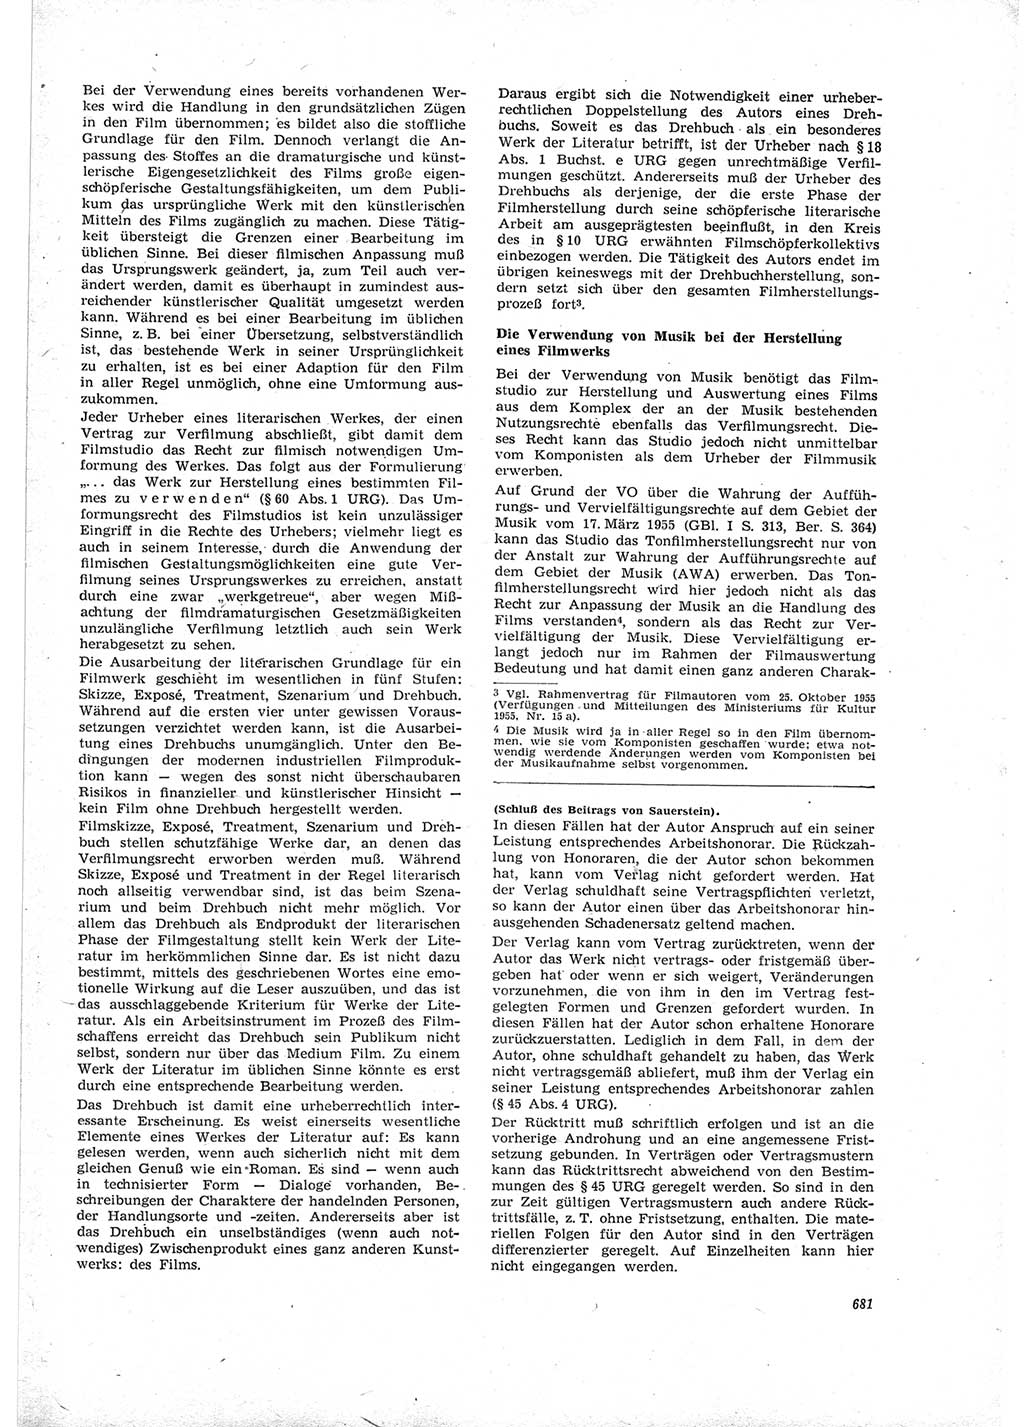 Neue Justiz (NJ), Zeitschrift für Recht und Rechtswissenschaft [Deutsche Demokratische Republik (DDR)], 19. Jahrgang 1965, Seite 681 (NJ DDR 1965, S. 681)